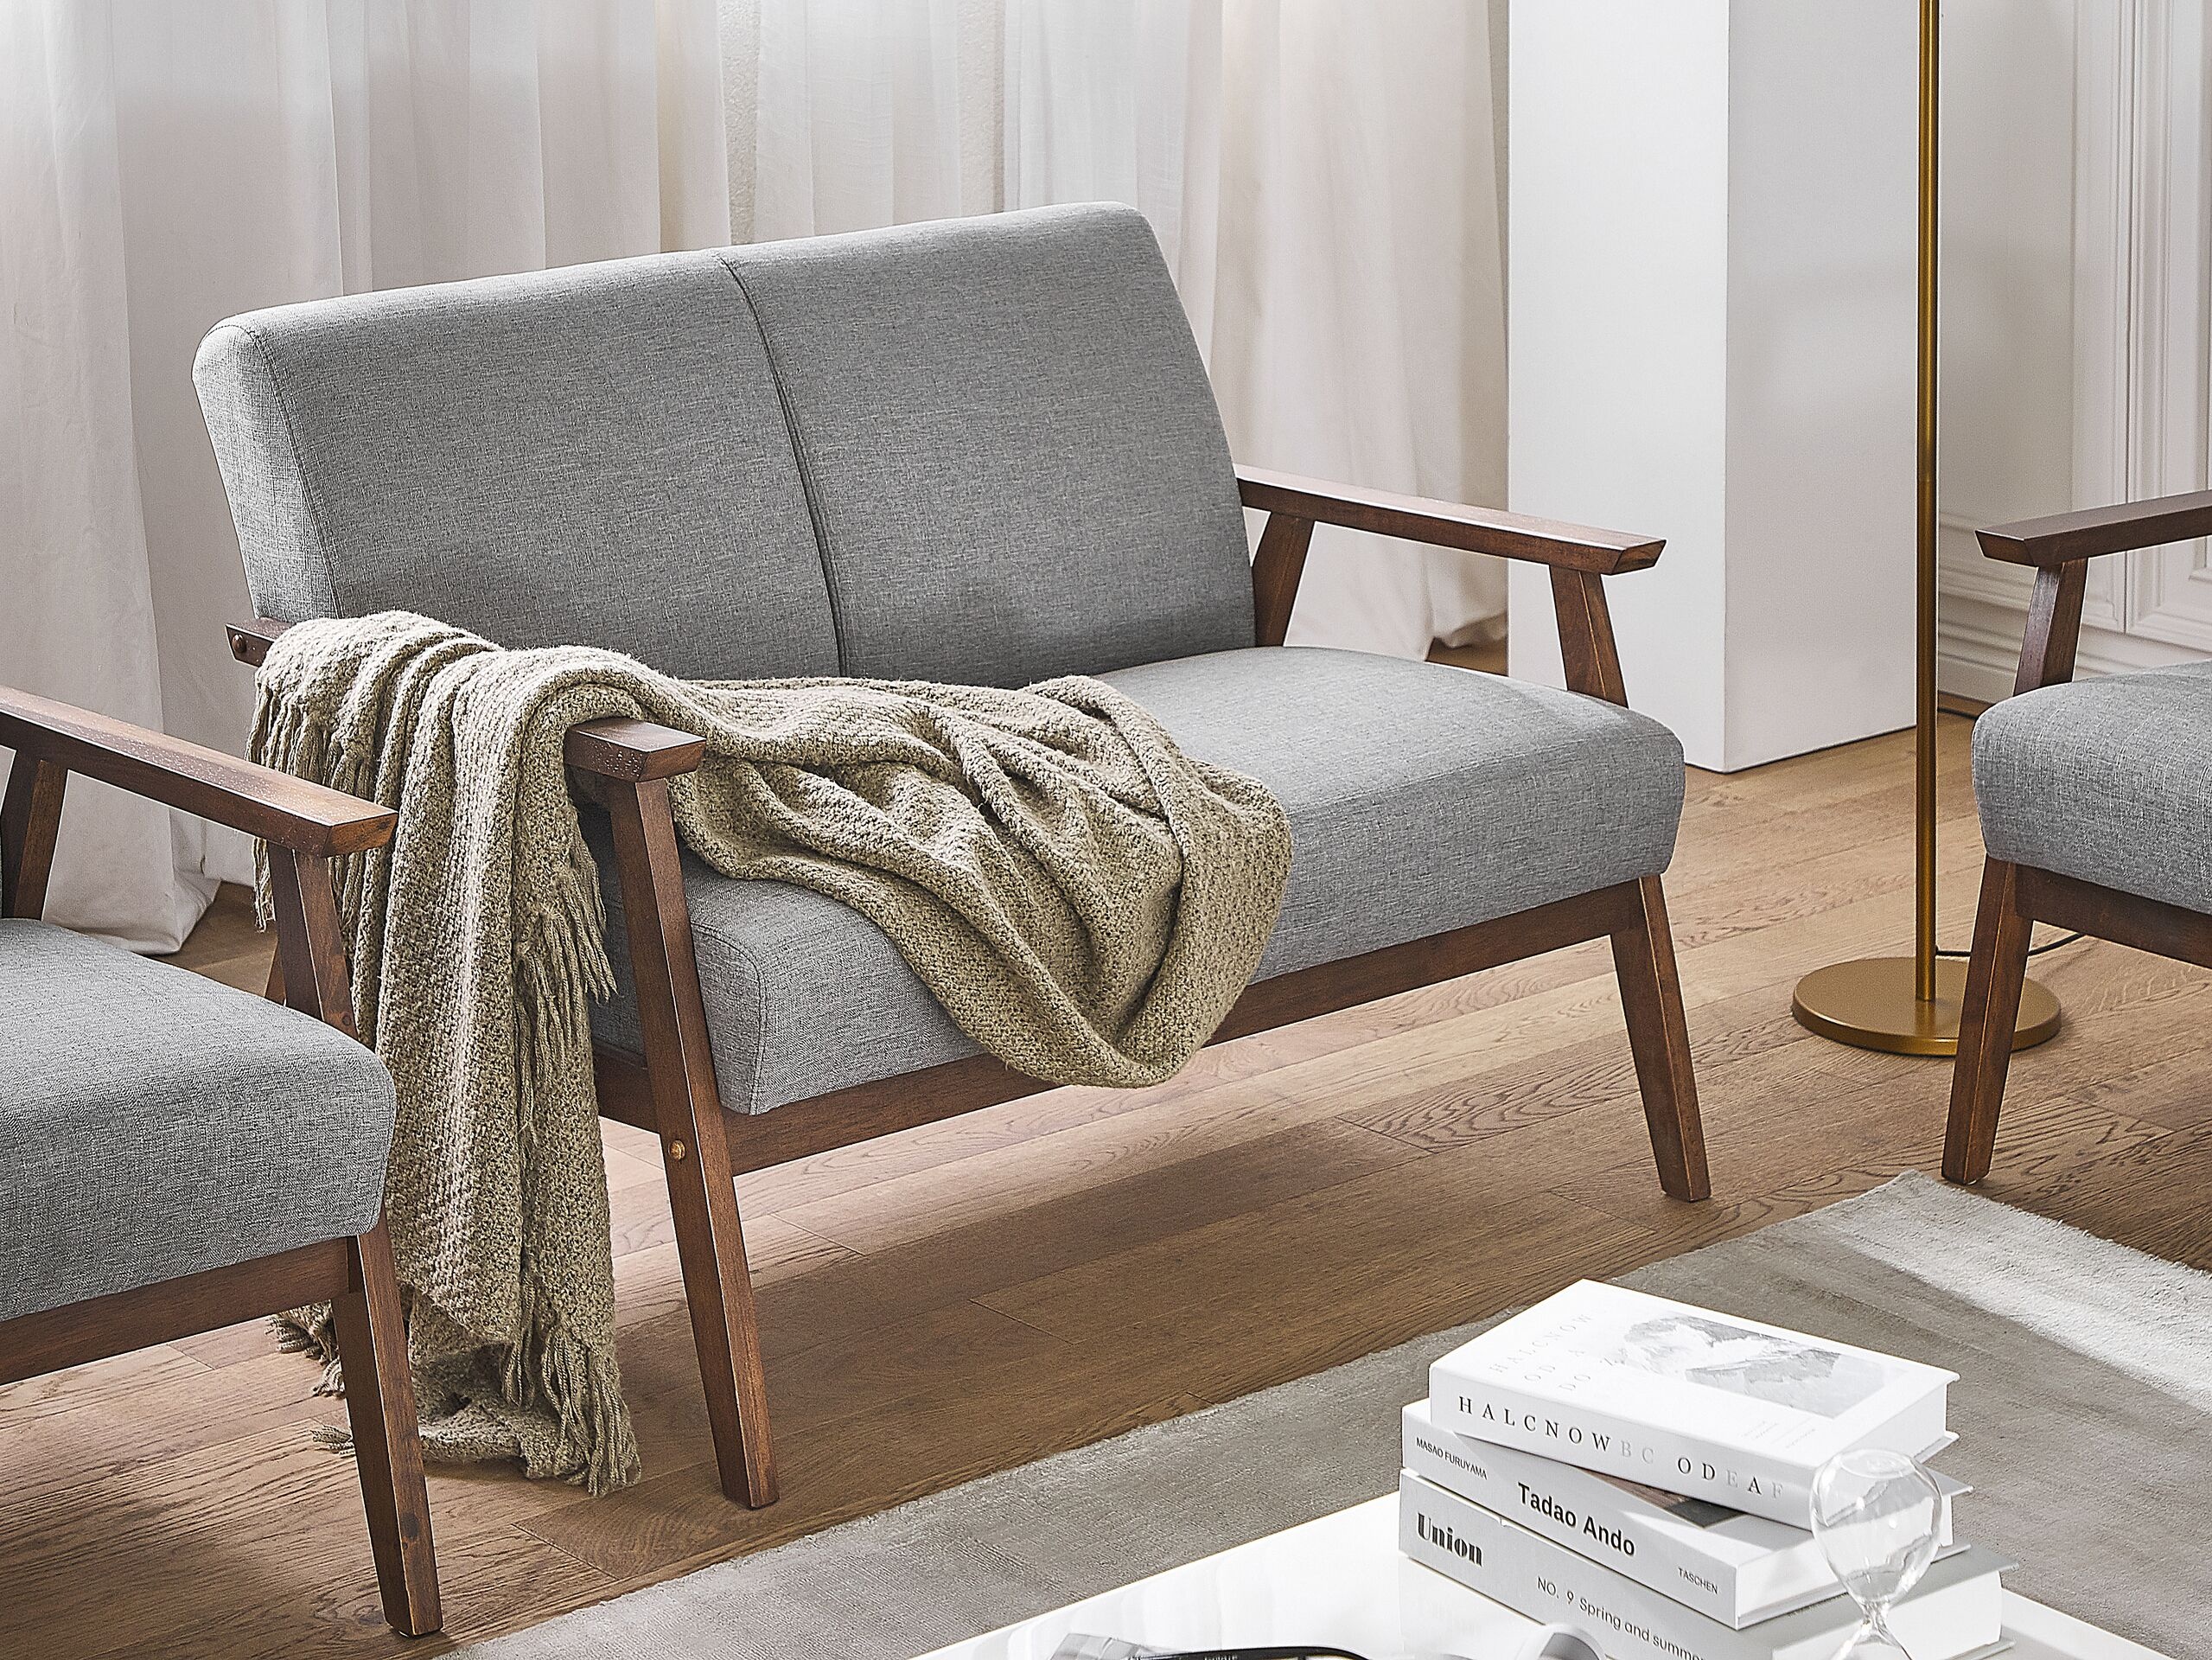 2-Sitzer Sofa grau Retro-Design ASNES